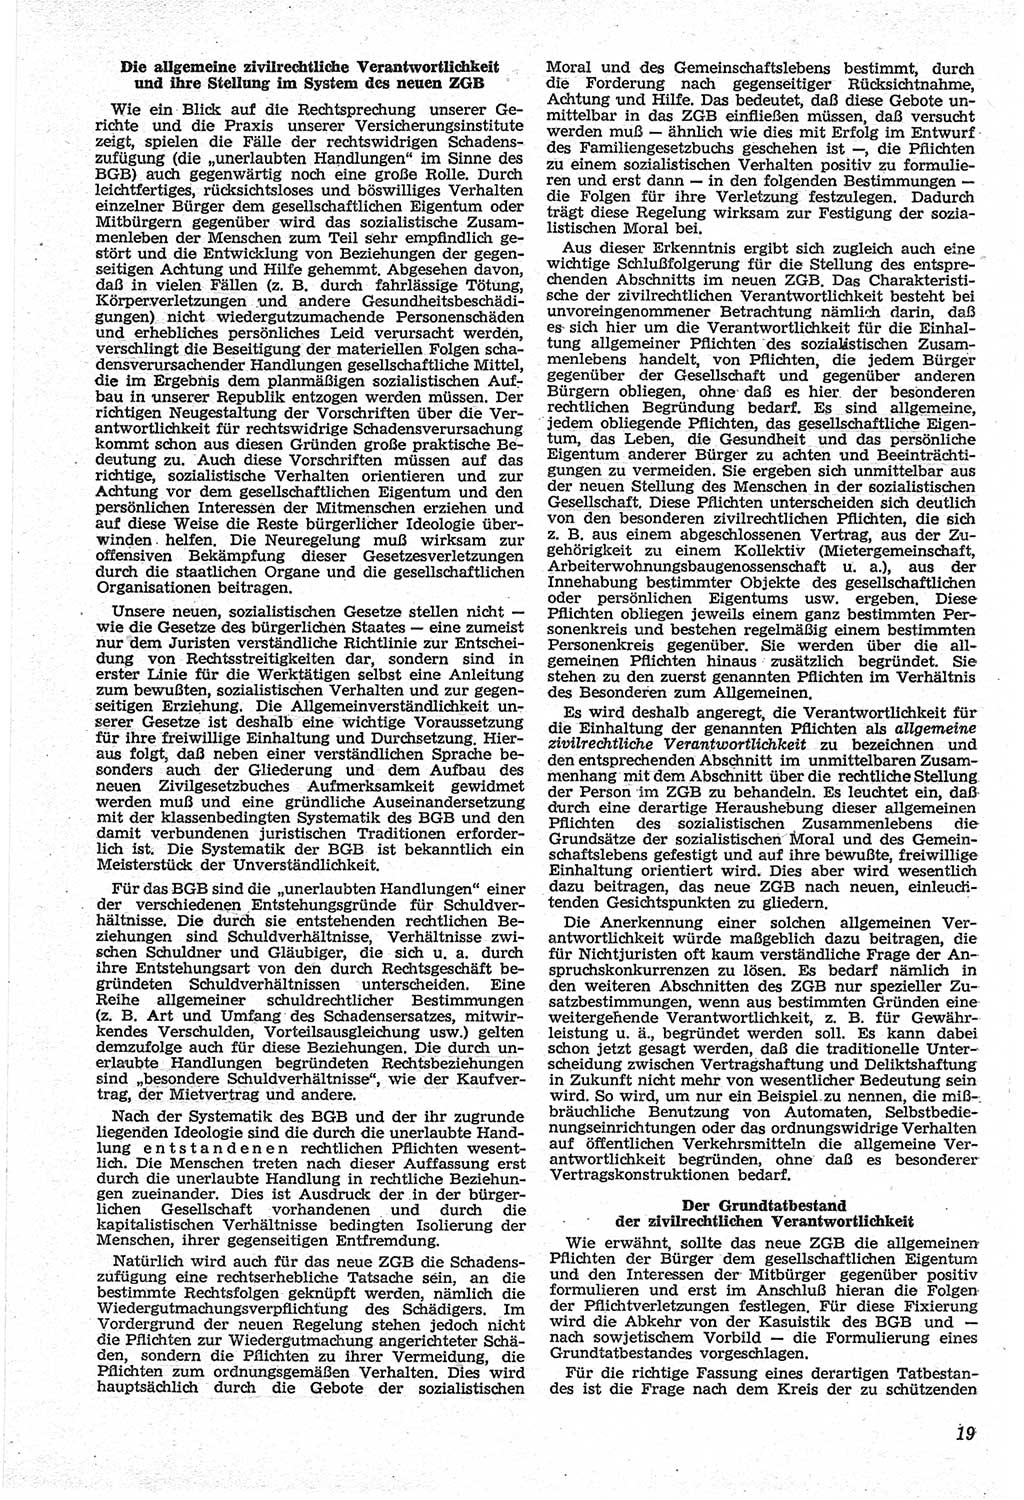 Neue Justiz (NJ), Zeitschrift für Recht und Rechtswissenschaft [Deutsche Demokratische Republik (DDR)], 14. Jahrgang 1960, Seite 19 (NJ DDR 1960, S. 19)